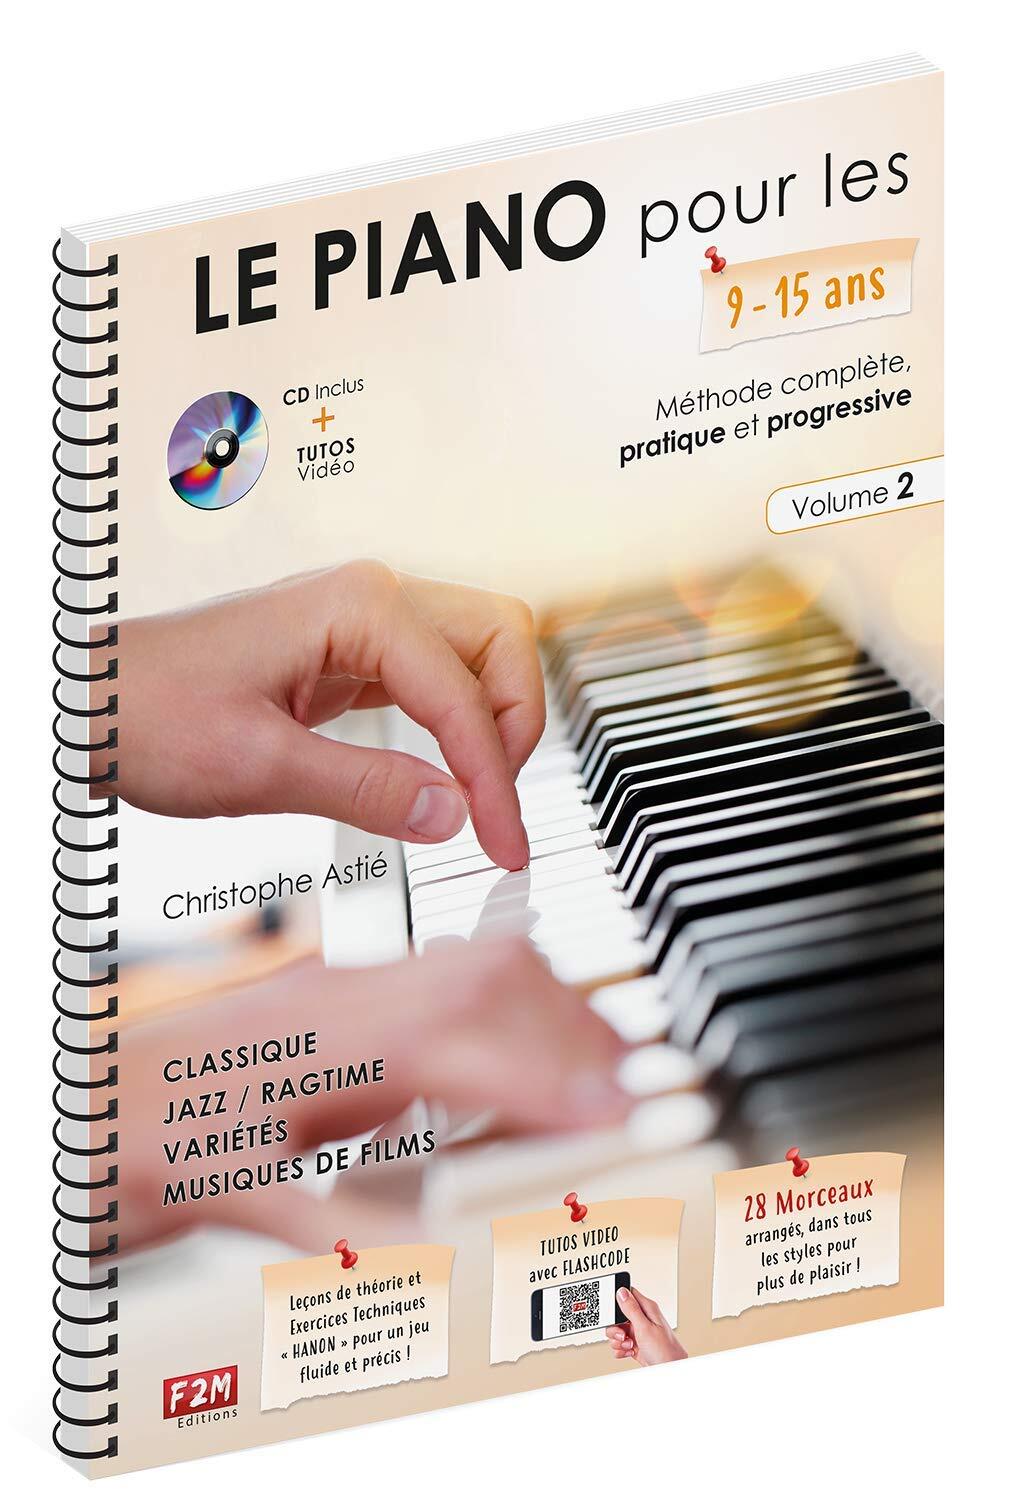 Le Piano Pour Les 9-15 Ans Volume 2 Christophe Astié : photo 1